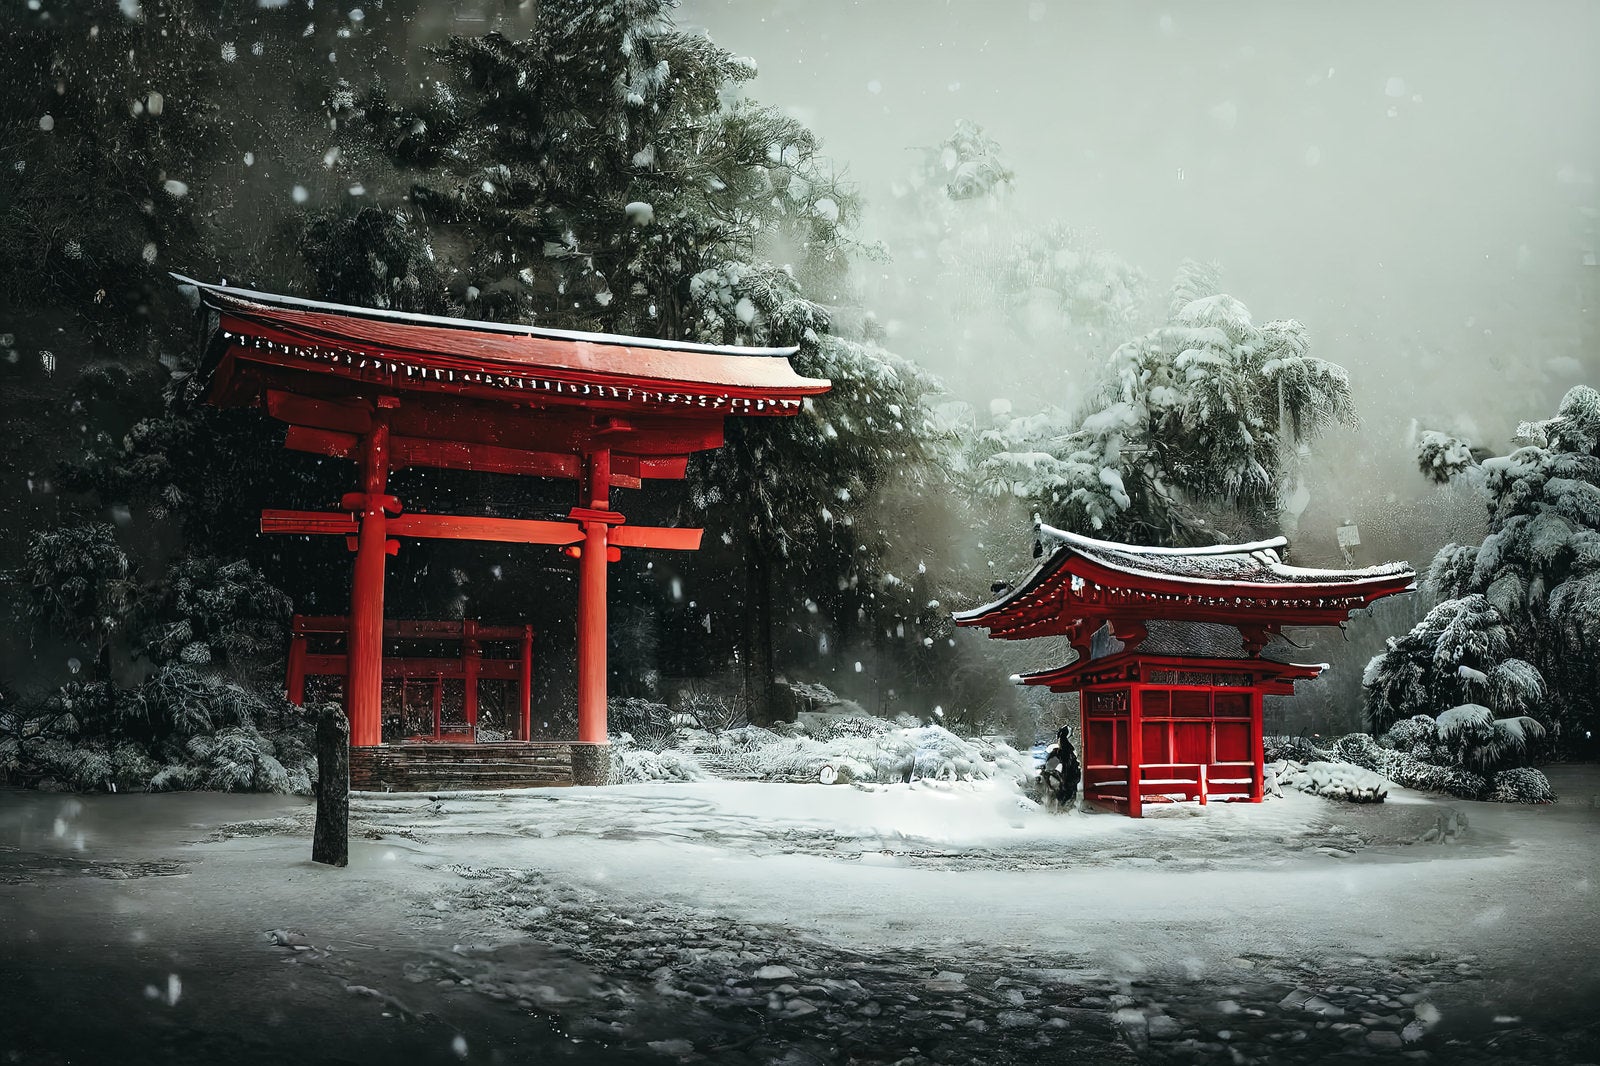 「雪が吹雪く中の大きな赤い鳥居」の写真